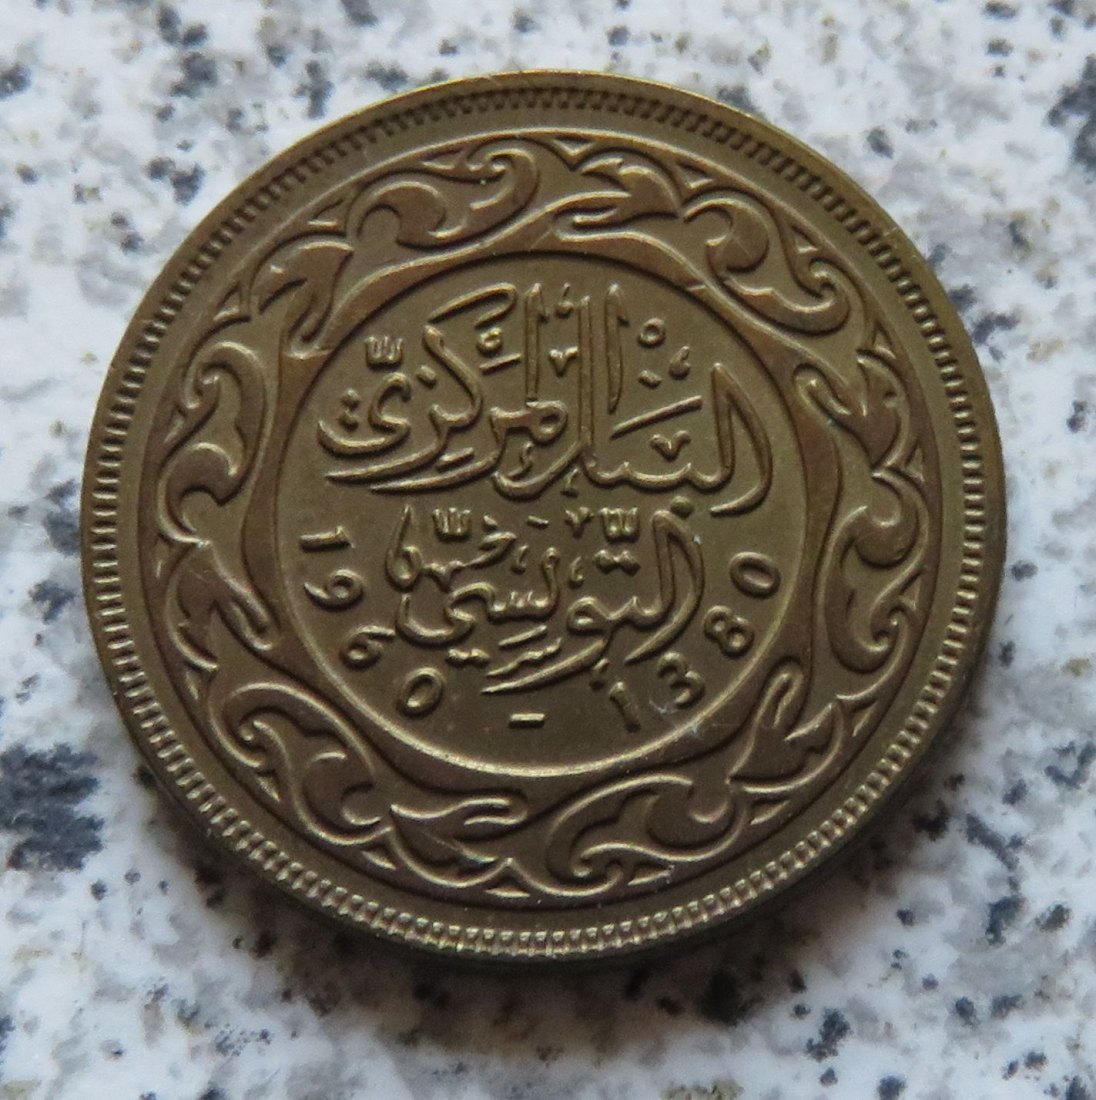  Tunesien 10 Millim 1960 funz/unz   